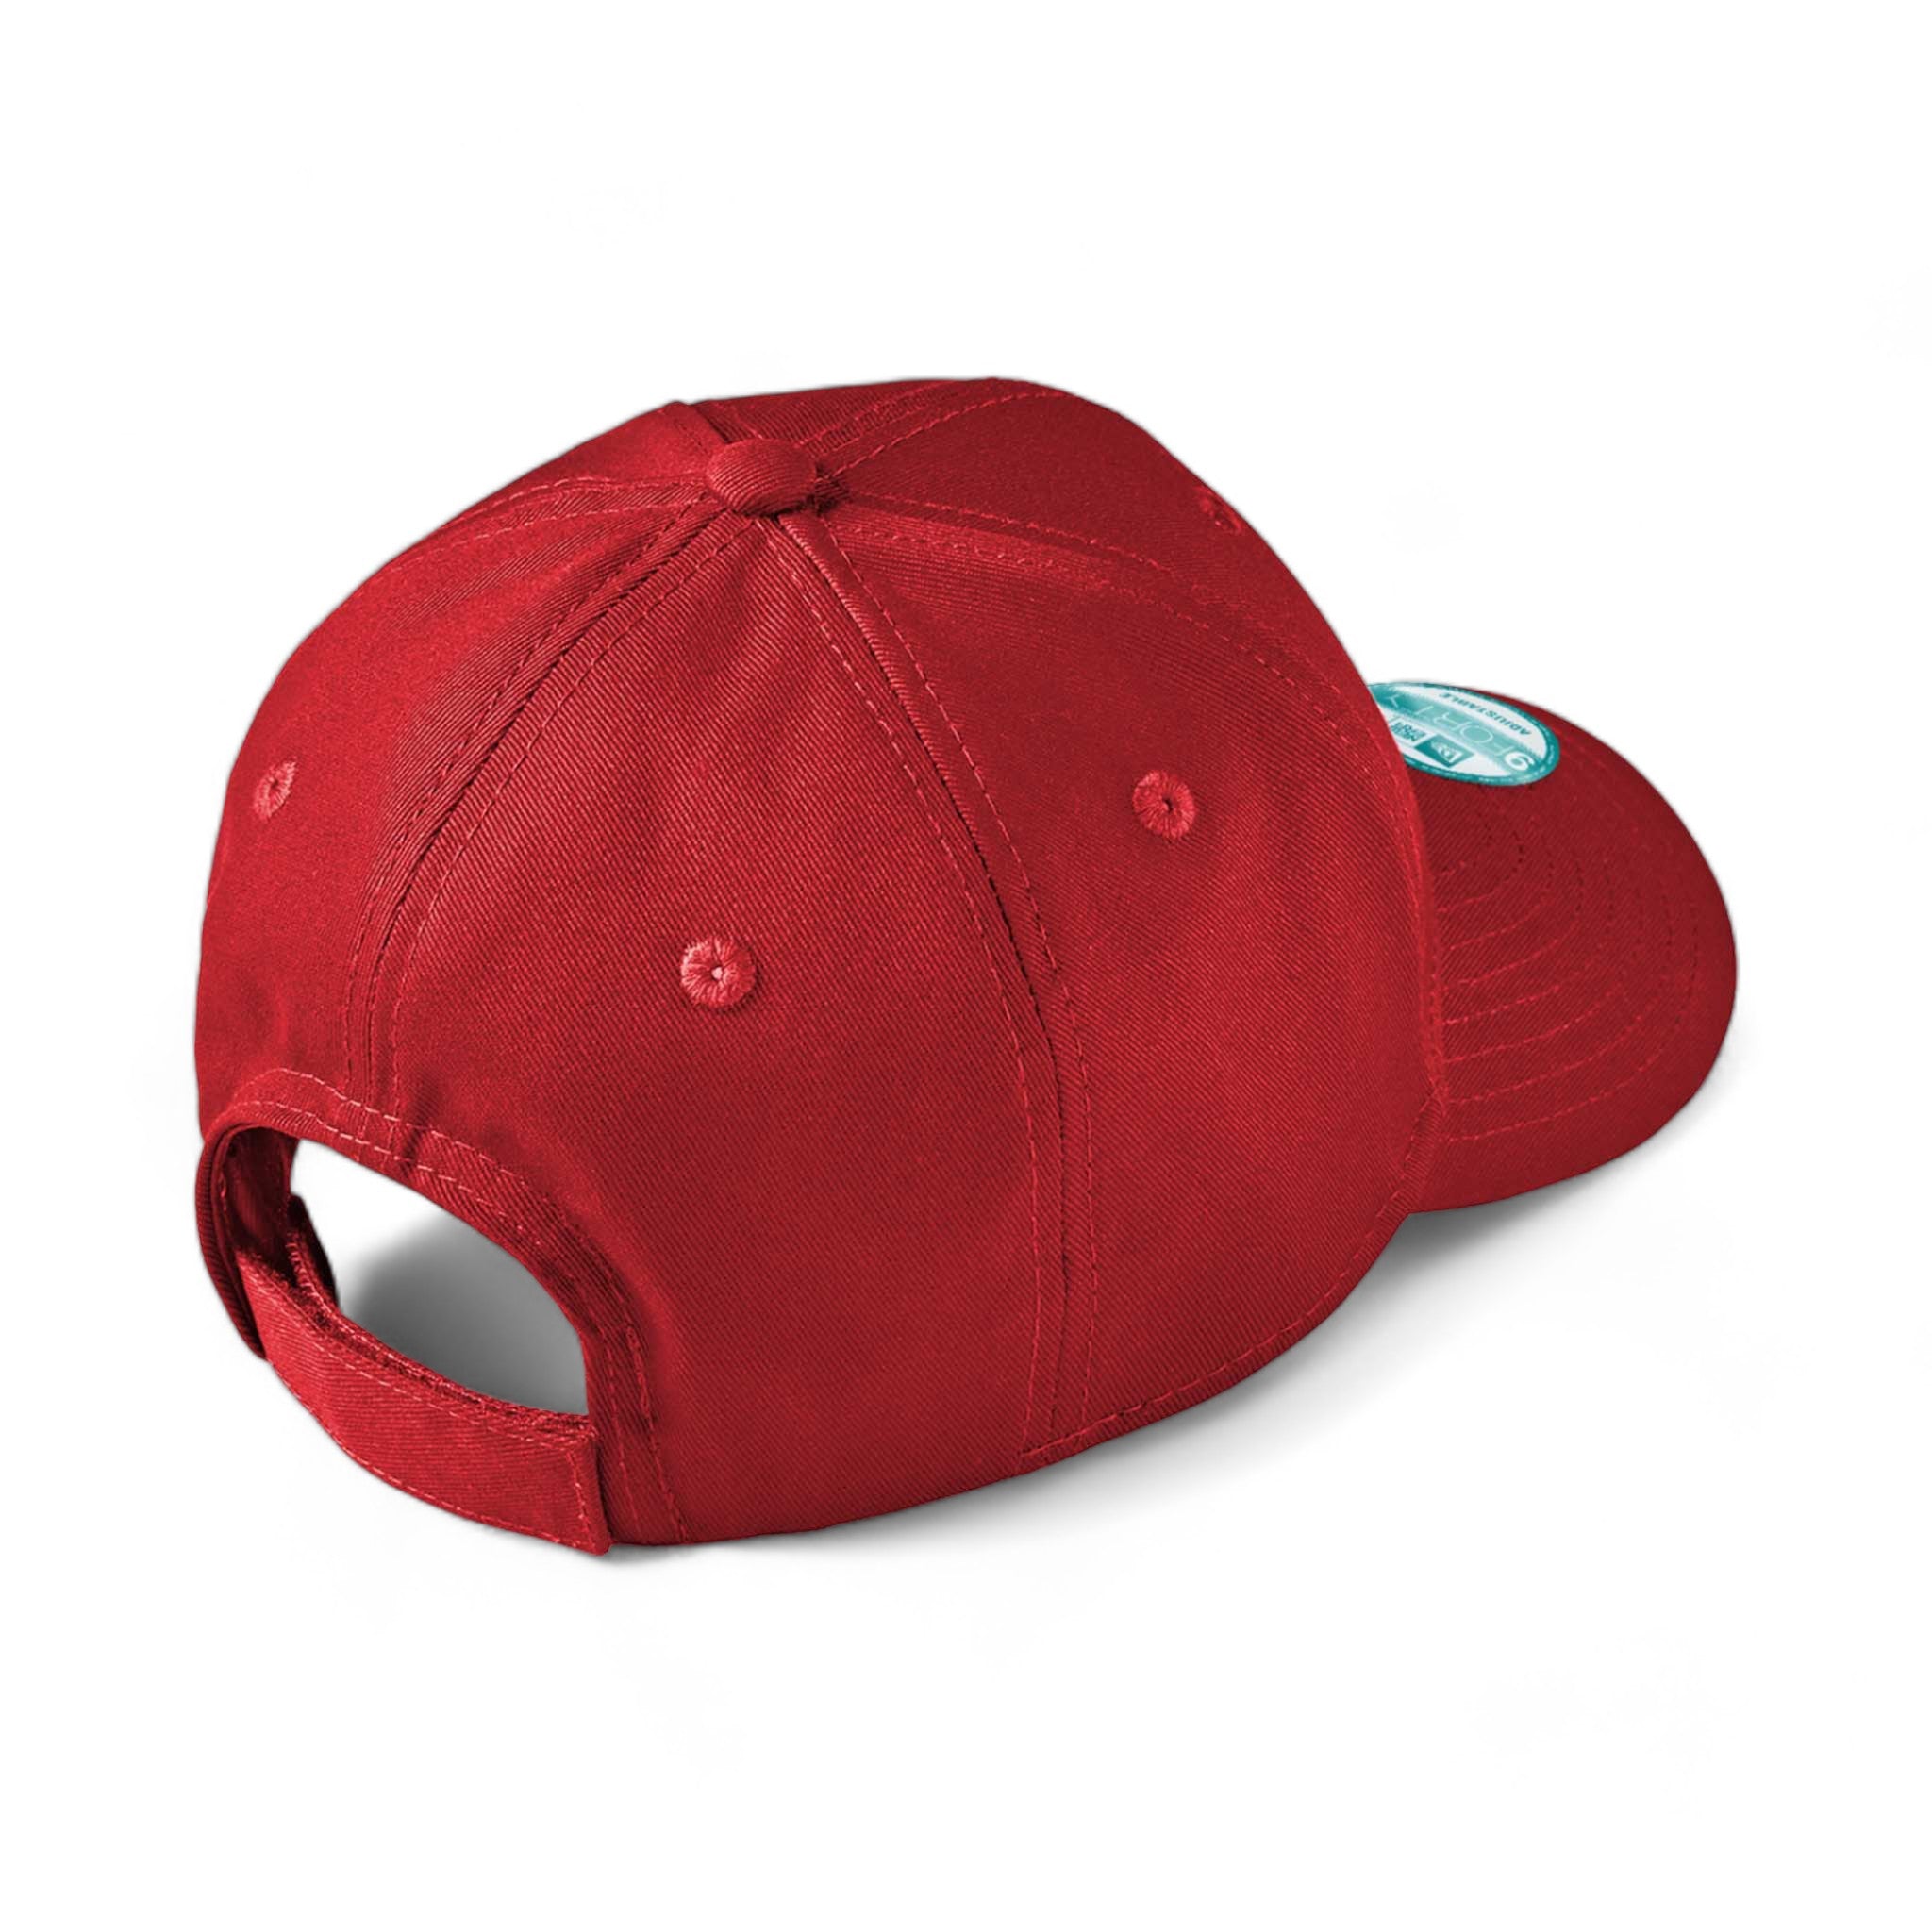 Back view of New Era NE200 custom hat in scarlet red